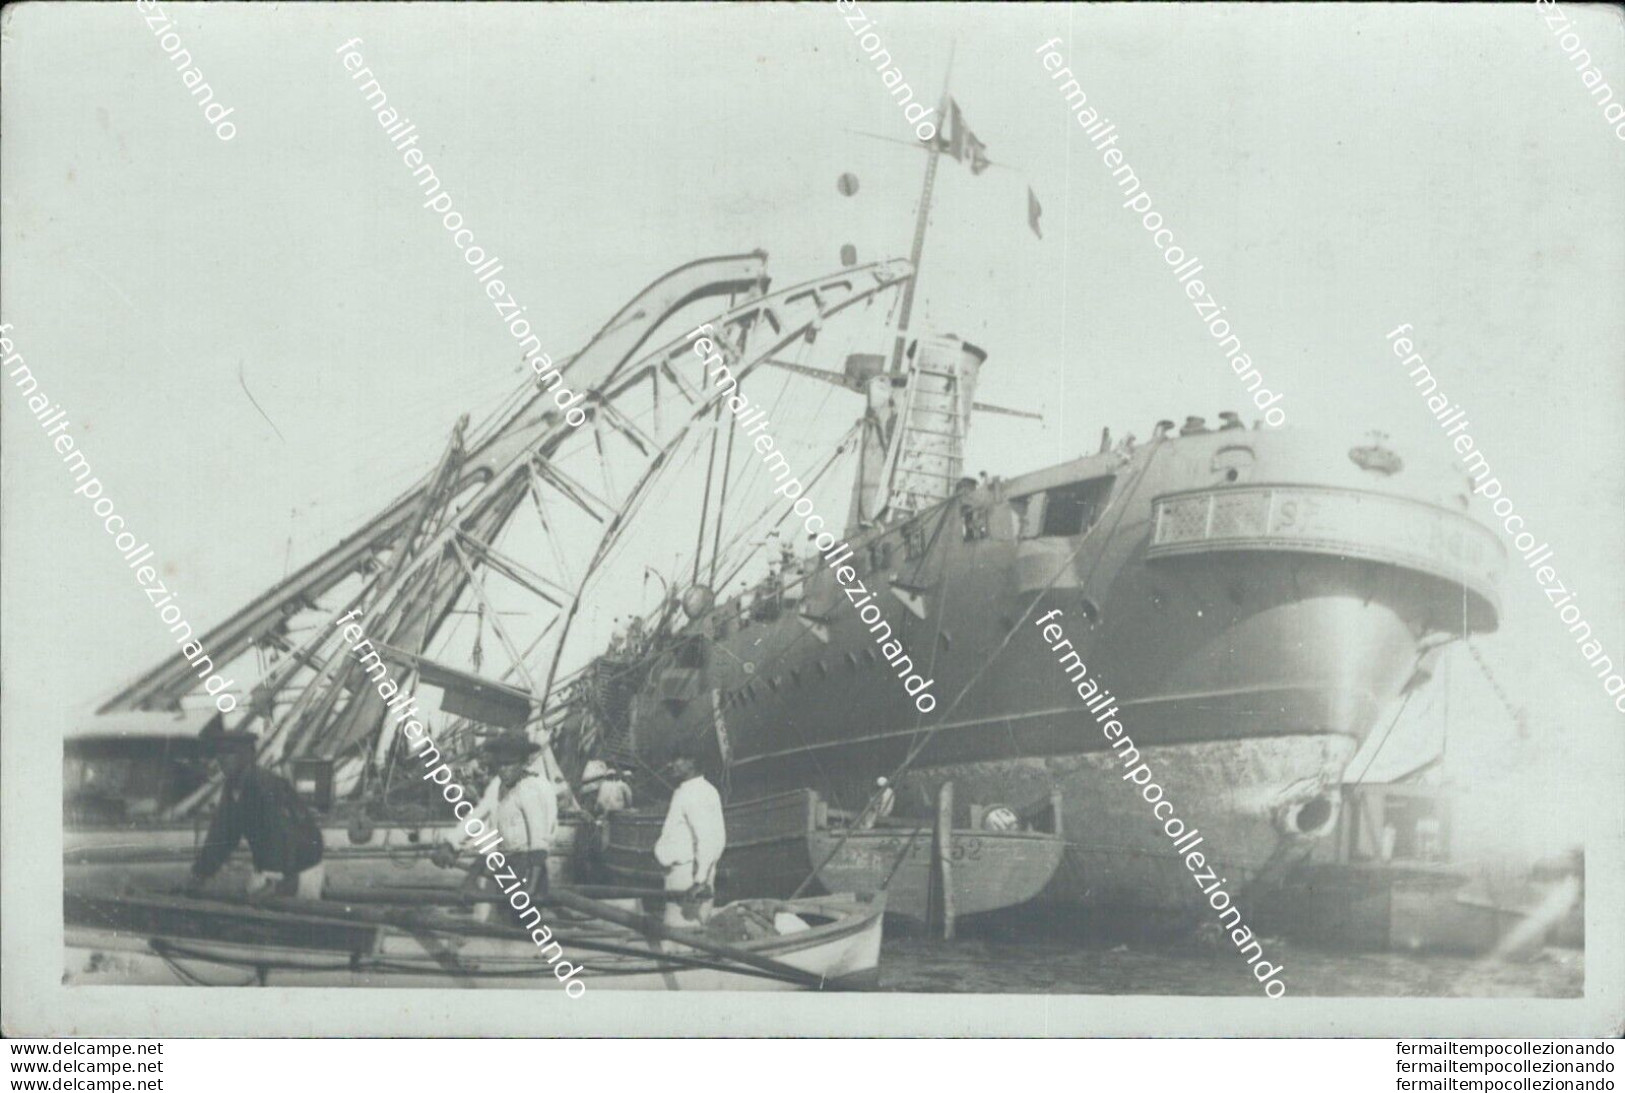 Ba390 Cartolina Fotografica Regia Nave S.giorgio - Warships